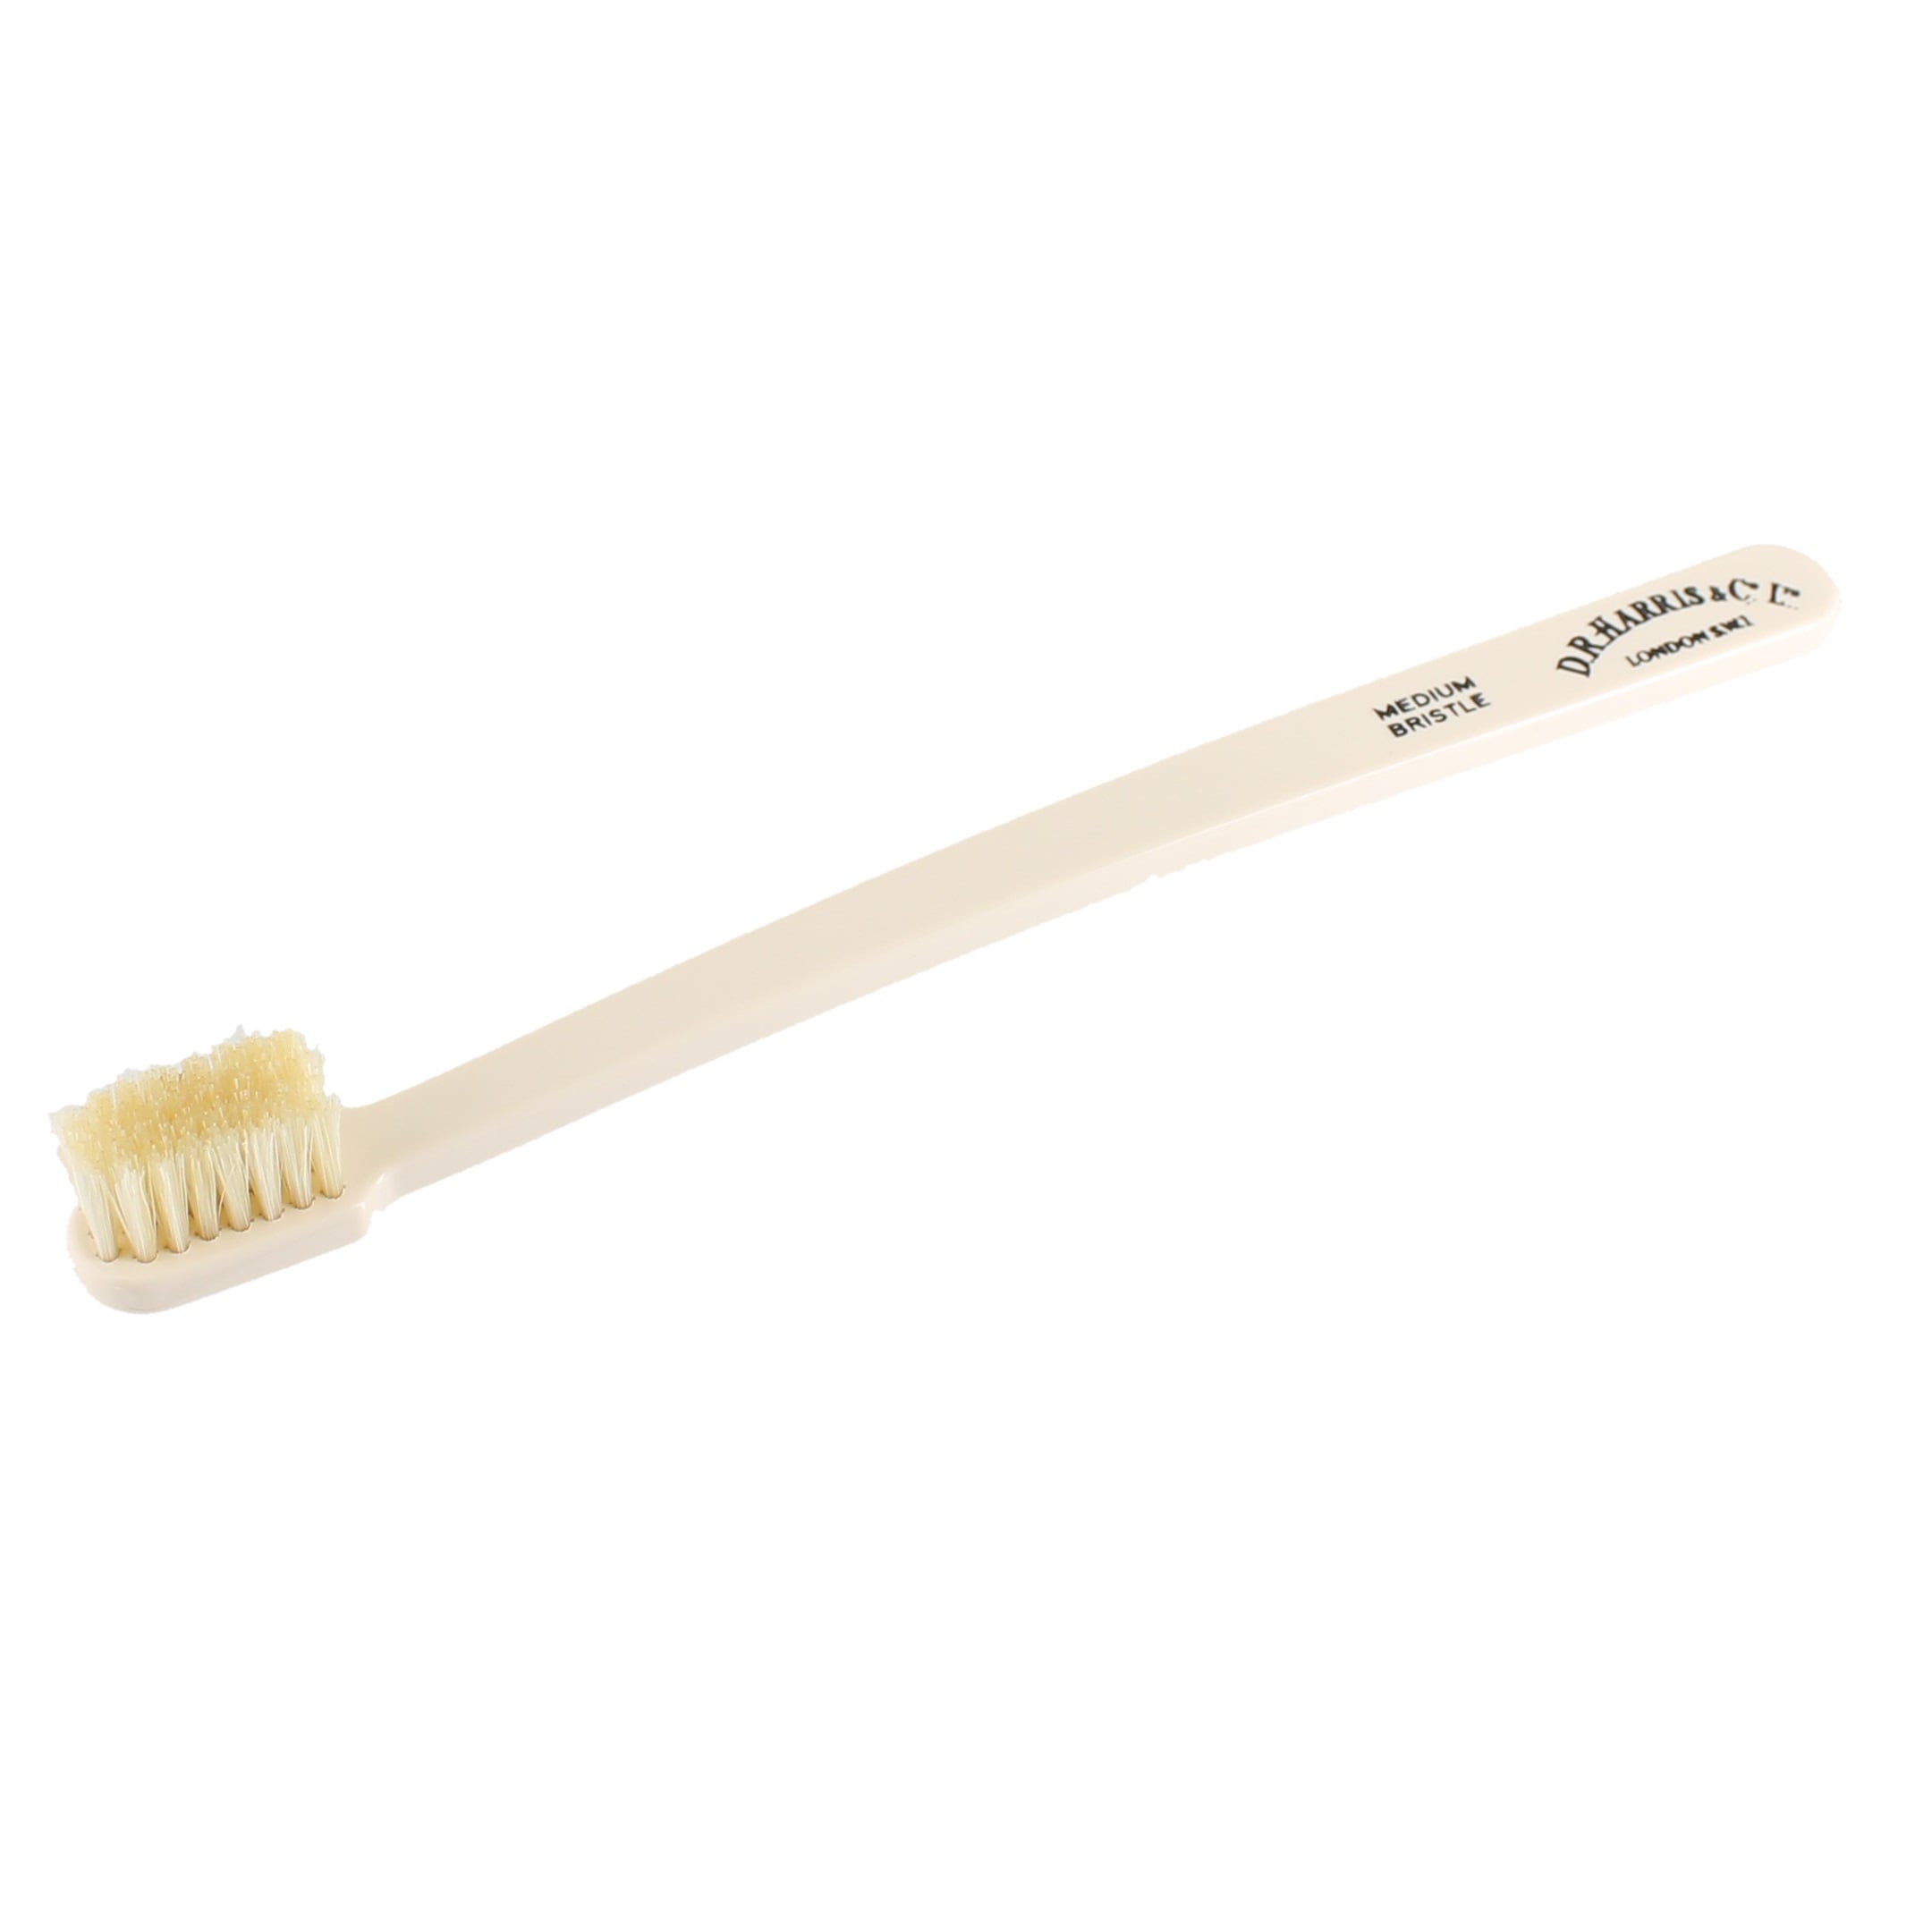 Зубные щетки ричи. Зубная щетка Captain Fawcett Toothbrush with natural Bristles. Круглая зубная щетка средней жесткости. Зубная щетка щетина сверху. Зубная щетка щетина серая.